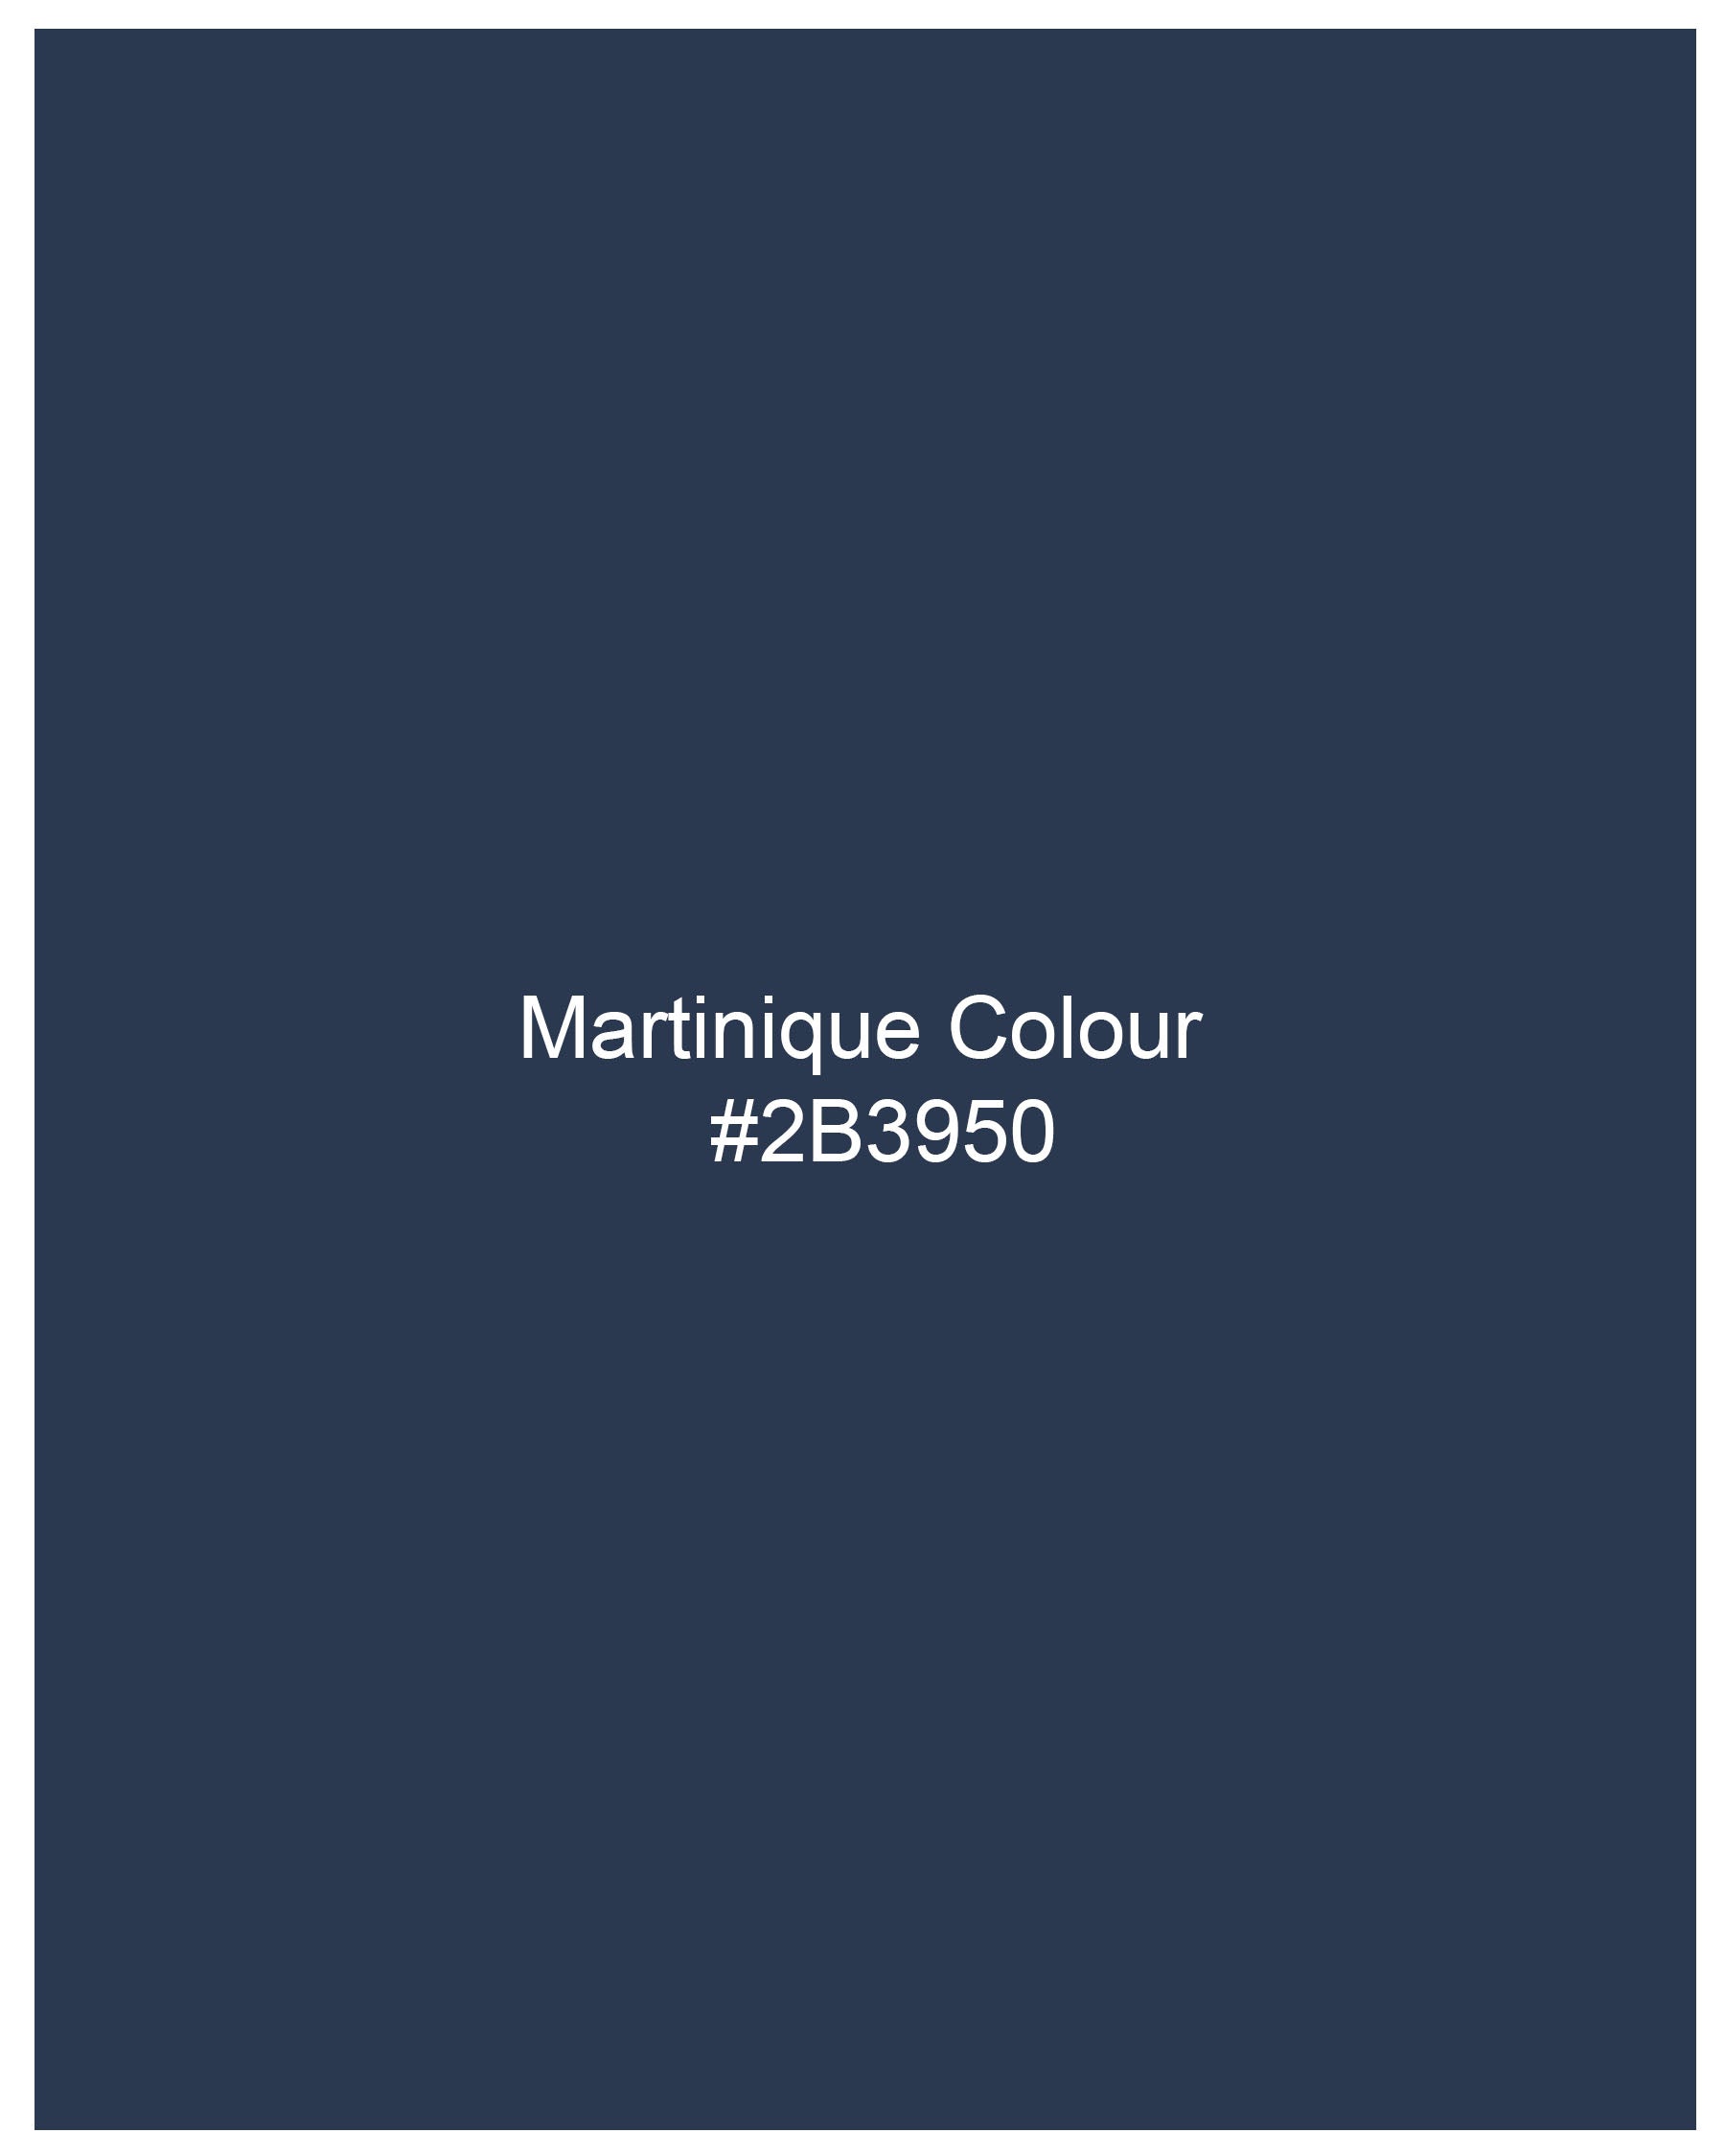 Martinique Navy Blue Flannel Designer Overshirt 8084-CA-P133-38, 8084-CA-P133-H-38, 8084-CA-P133-39, 8084-CA-P133-H-39, 8084-CA-P133-40, 8084-CA-P133-H-40, 8084-CA-P133-42, 8084-CA-P133-H-42, 8084-CA-P133-44, 8084-CA-P133-H-44, 8084-CA-P133-46, 8084-CA-P133-H-46, 8084-CA-P133-48, 8084-CA-P133-H-48, 8084-CA-P133-50, 8084-CA-P133-H-50, 8084-CA-P133-52, 8084-CA-P133-H-52